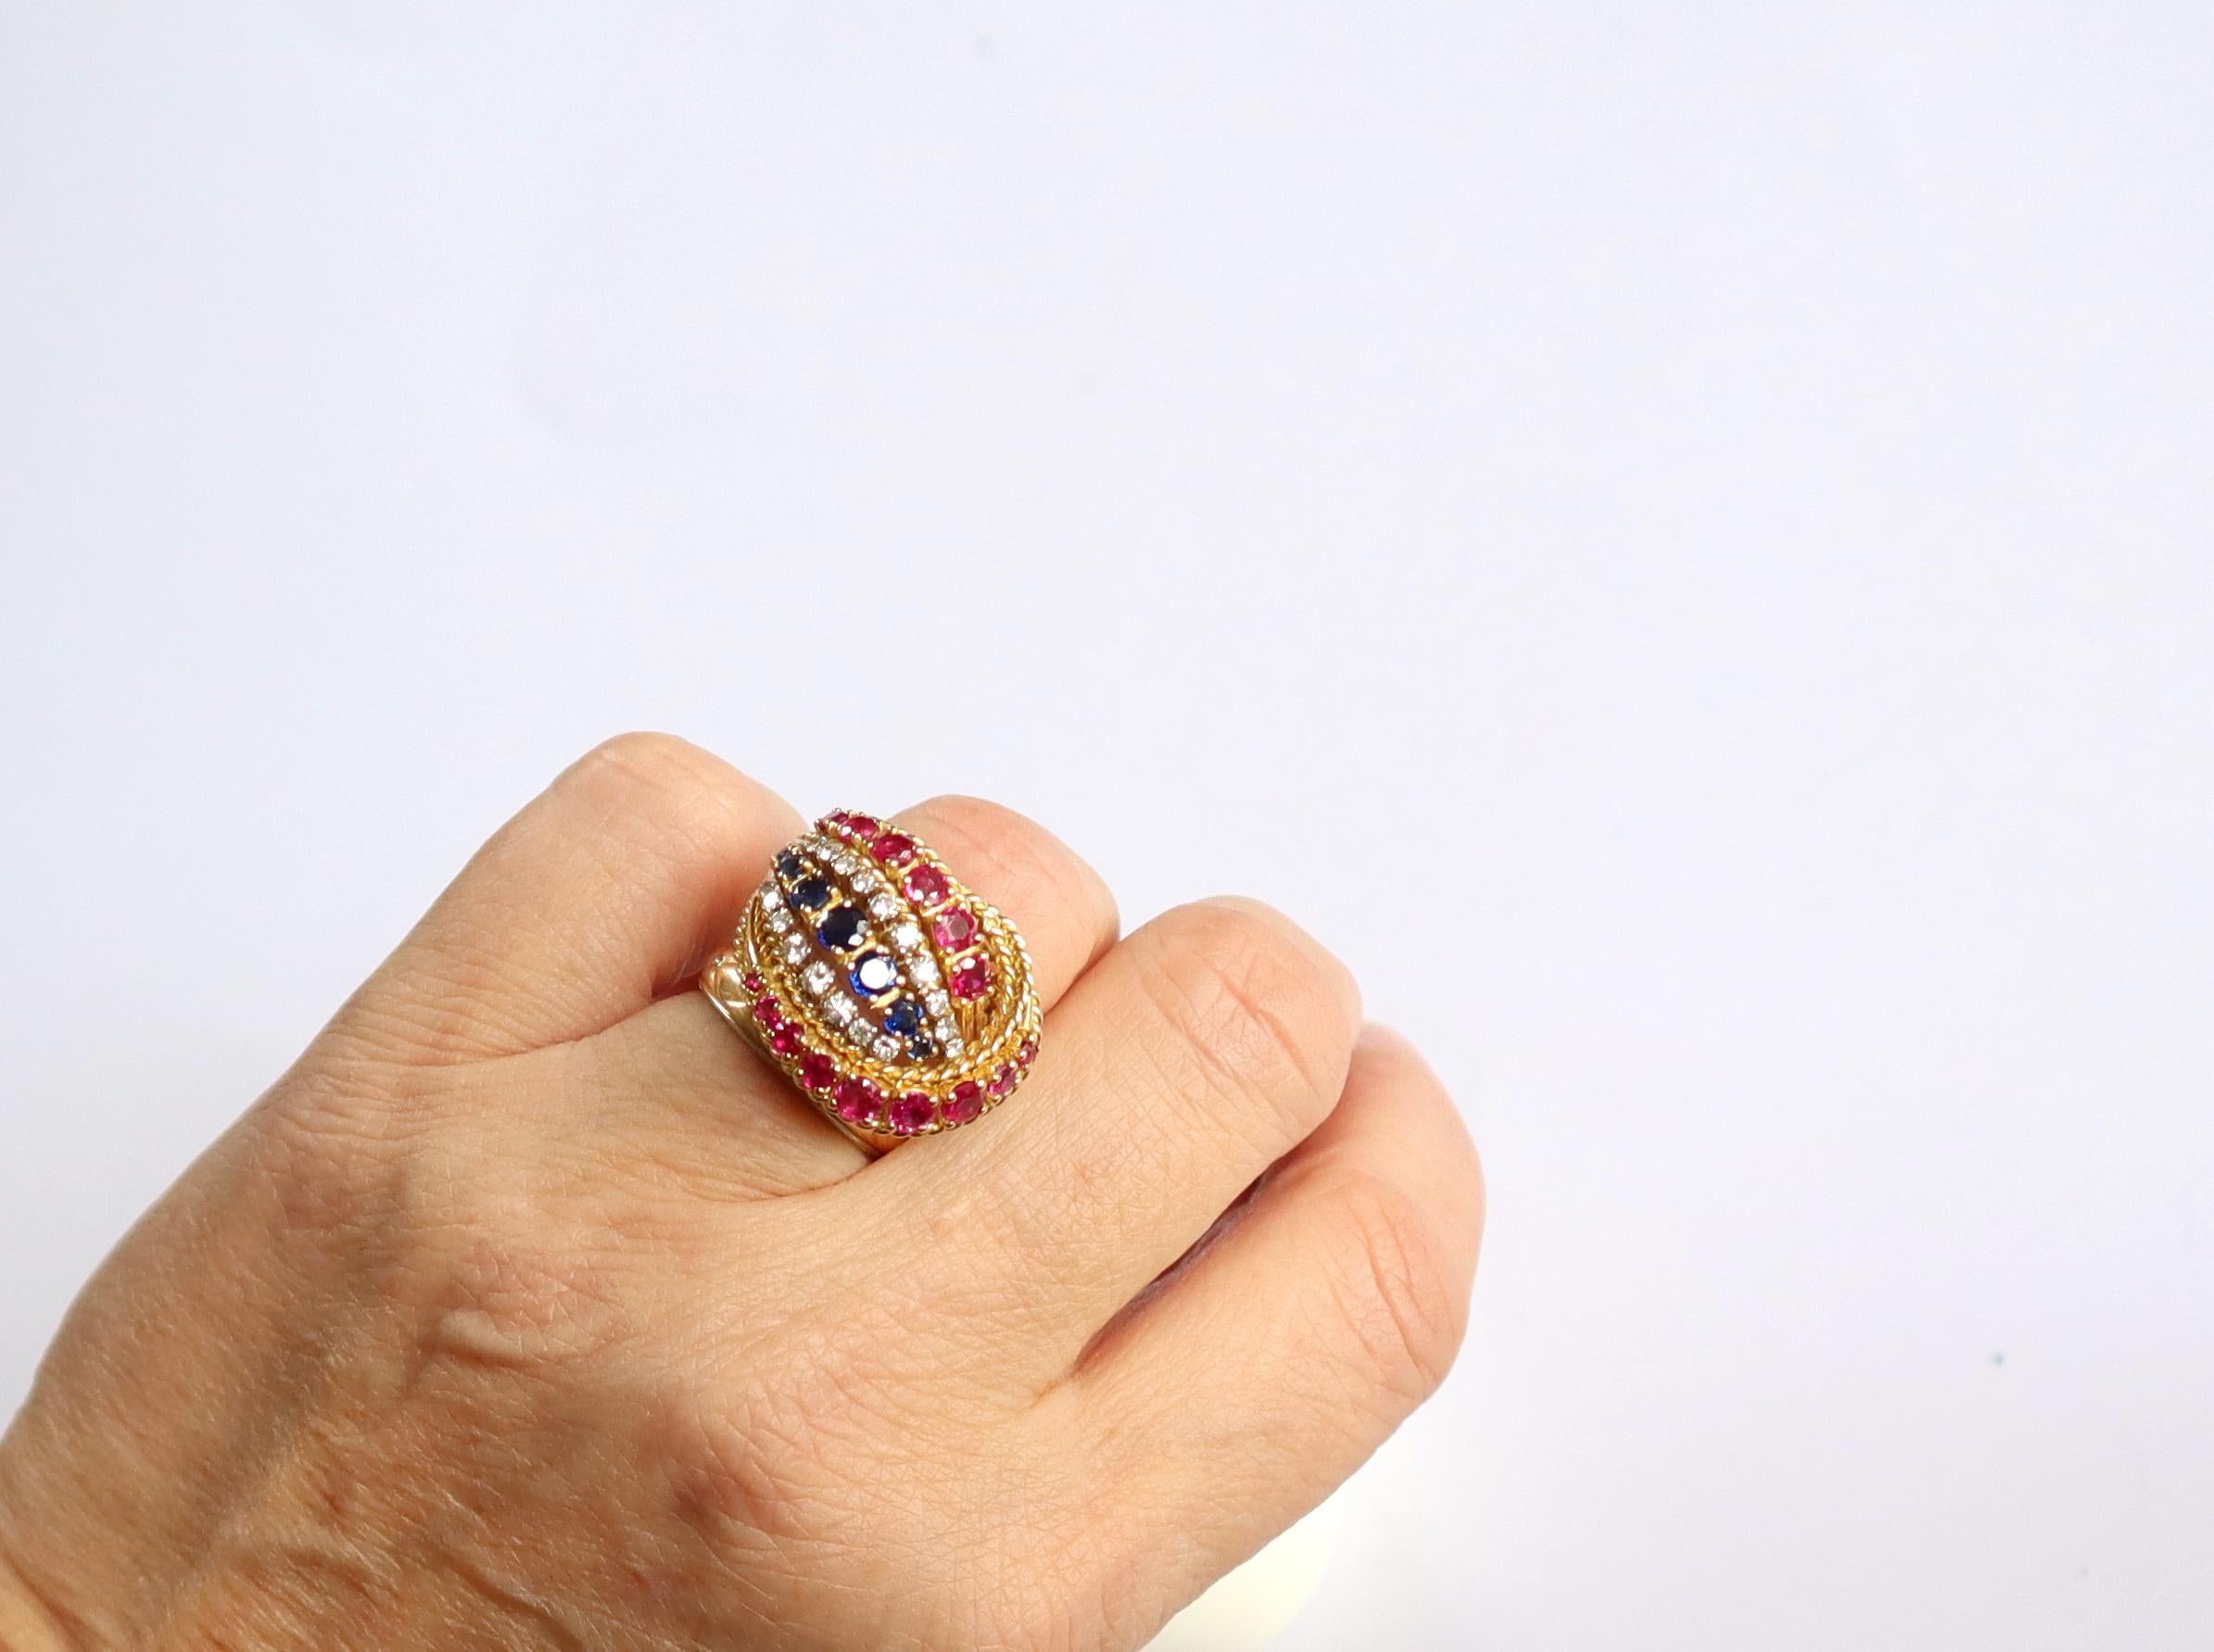 Schöner Ring aus den 1950er Jahren mit einem Knoten aus gedrehten Drähten aus 18 Kt (750°/ooo) Gelbgold, besetzt mit Linien von Saphiren, Rubinen und Diamanten. Unterschrift F.RO.
7 Saphire, darunter 3 größere, 15 Rubine, darunter 8 größere, 18